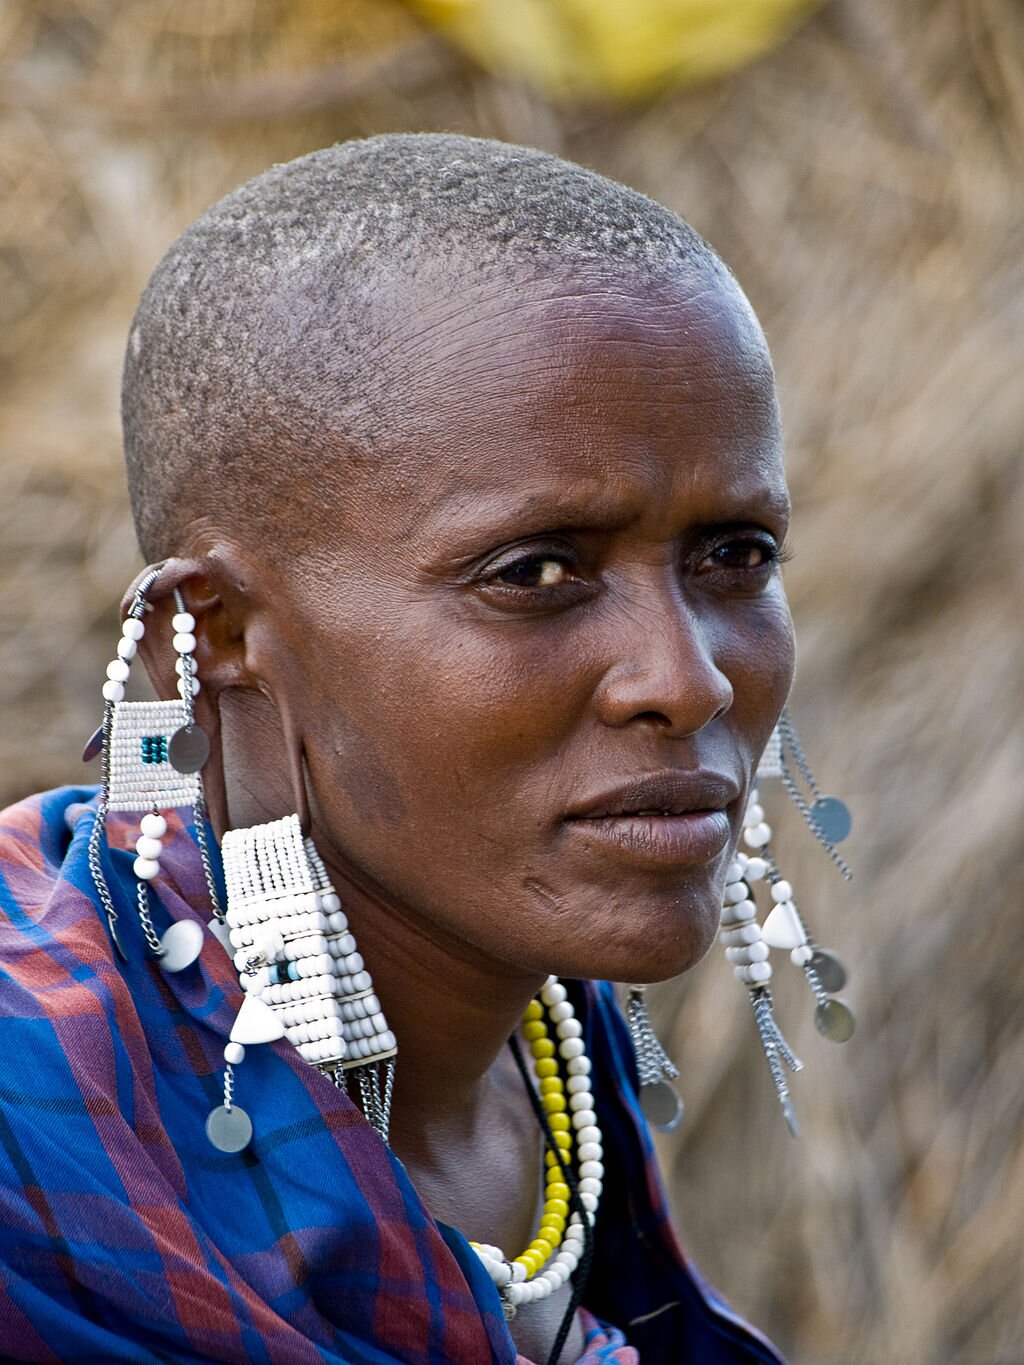 Zdjęcie przedstawia ciemnoskórą Masajkę. Kobieta ma pociągłą twarz, ogolone przy skórze włosy. W uszach ma liczne ozdoby z taśm i koralików. Na ramionach kolorową, kraciastą chustę. Na szyi dwa kolorowe naszyjniki z małych koralików. 